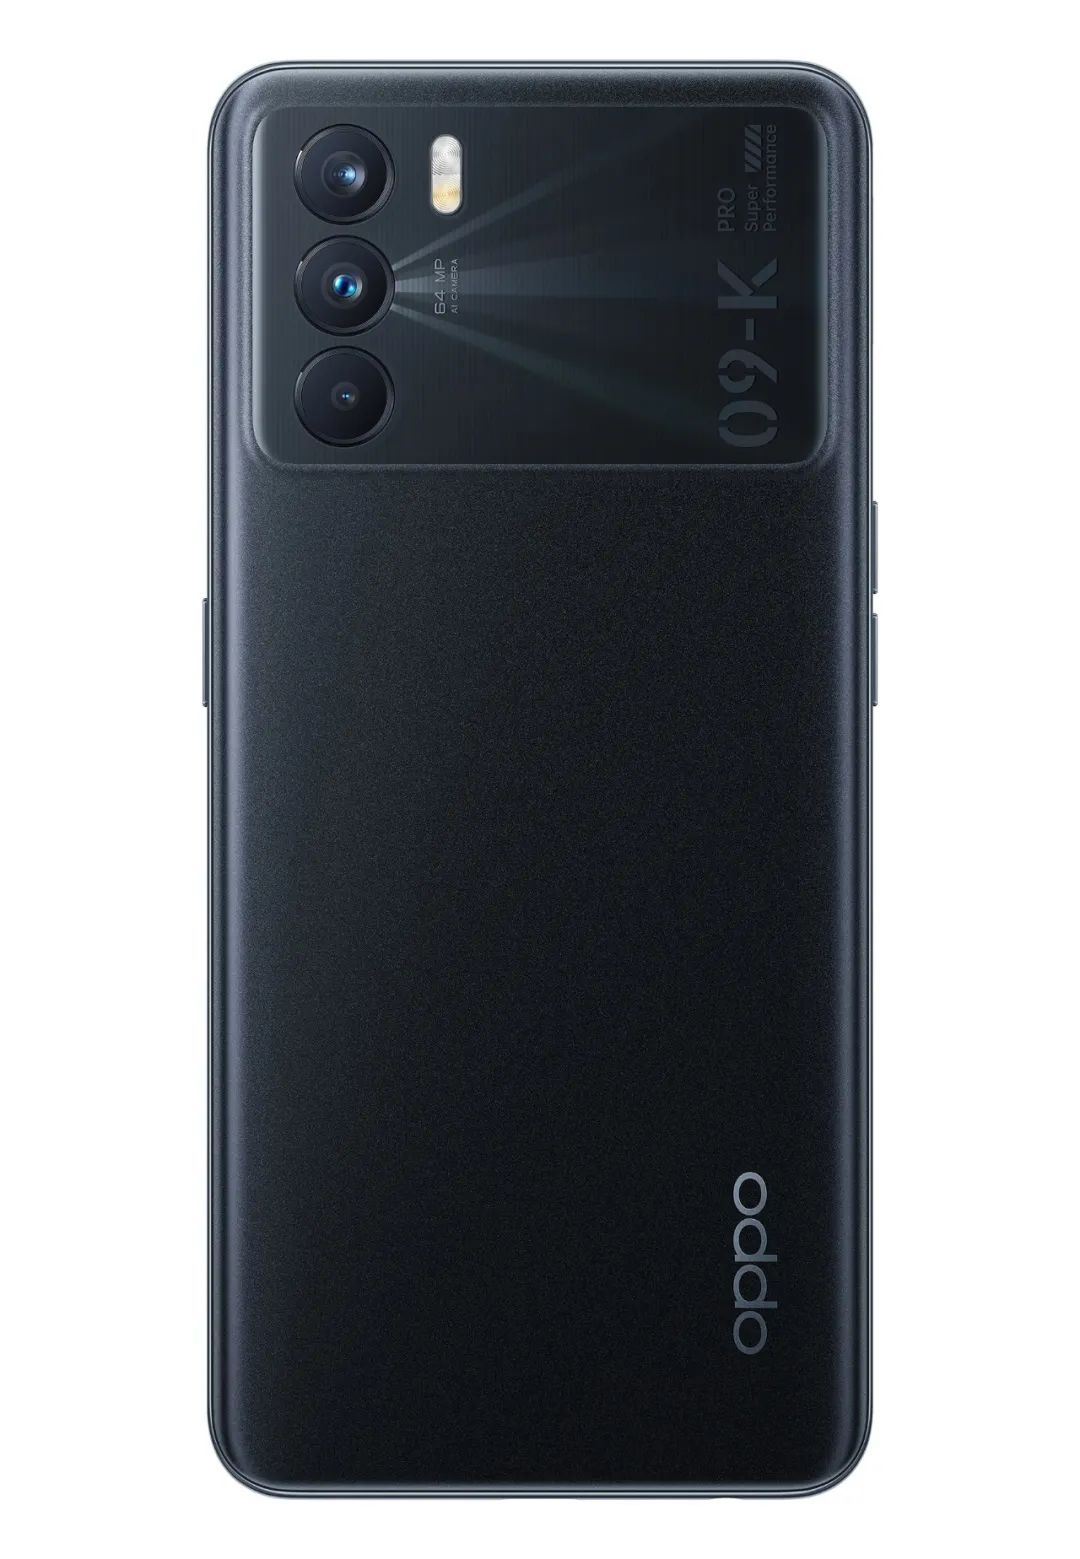 K系列的年度旗舰级作品——OPPO K9 Pro手机